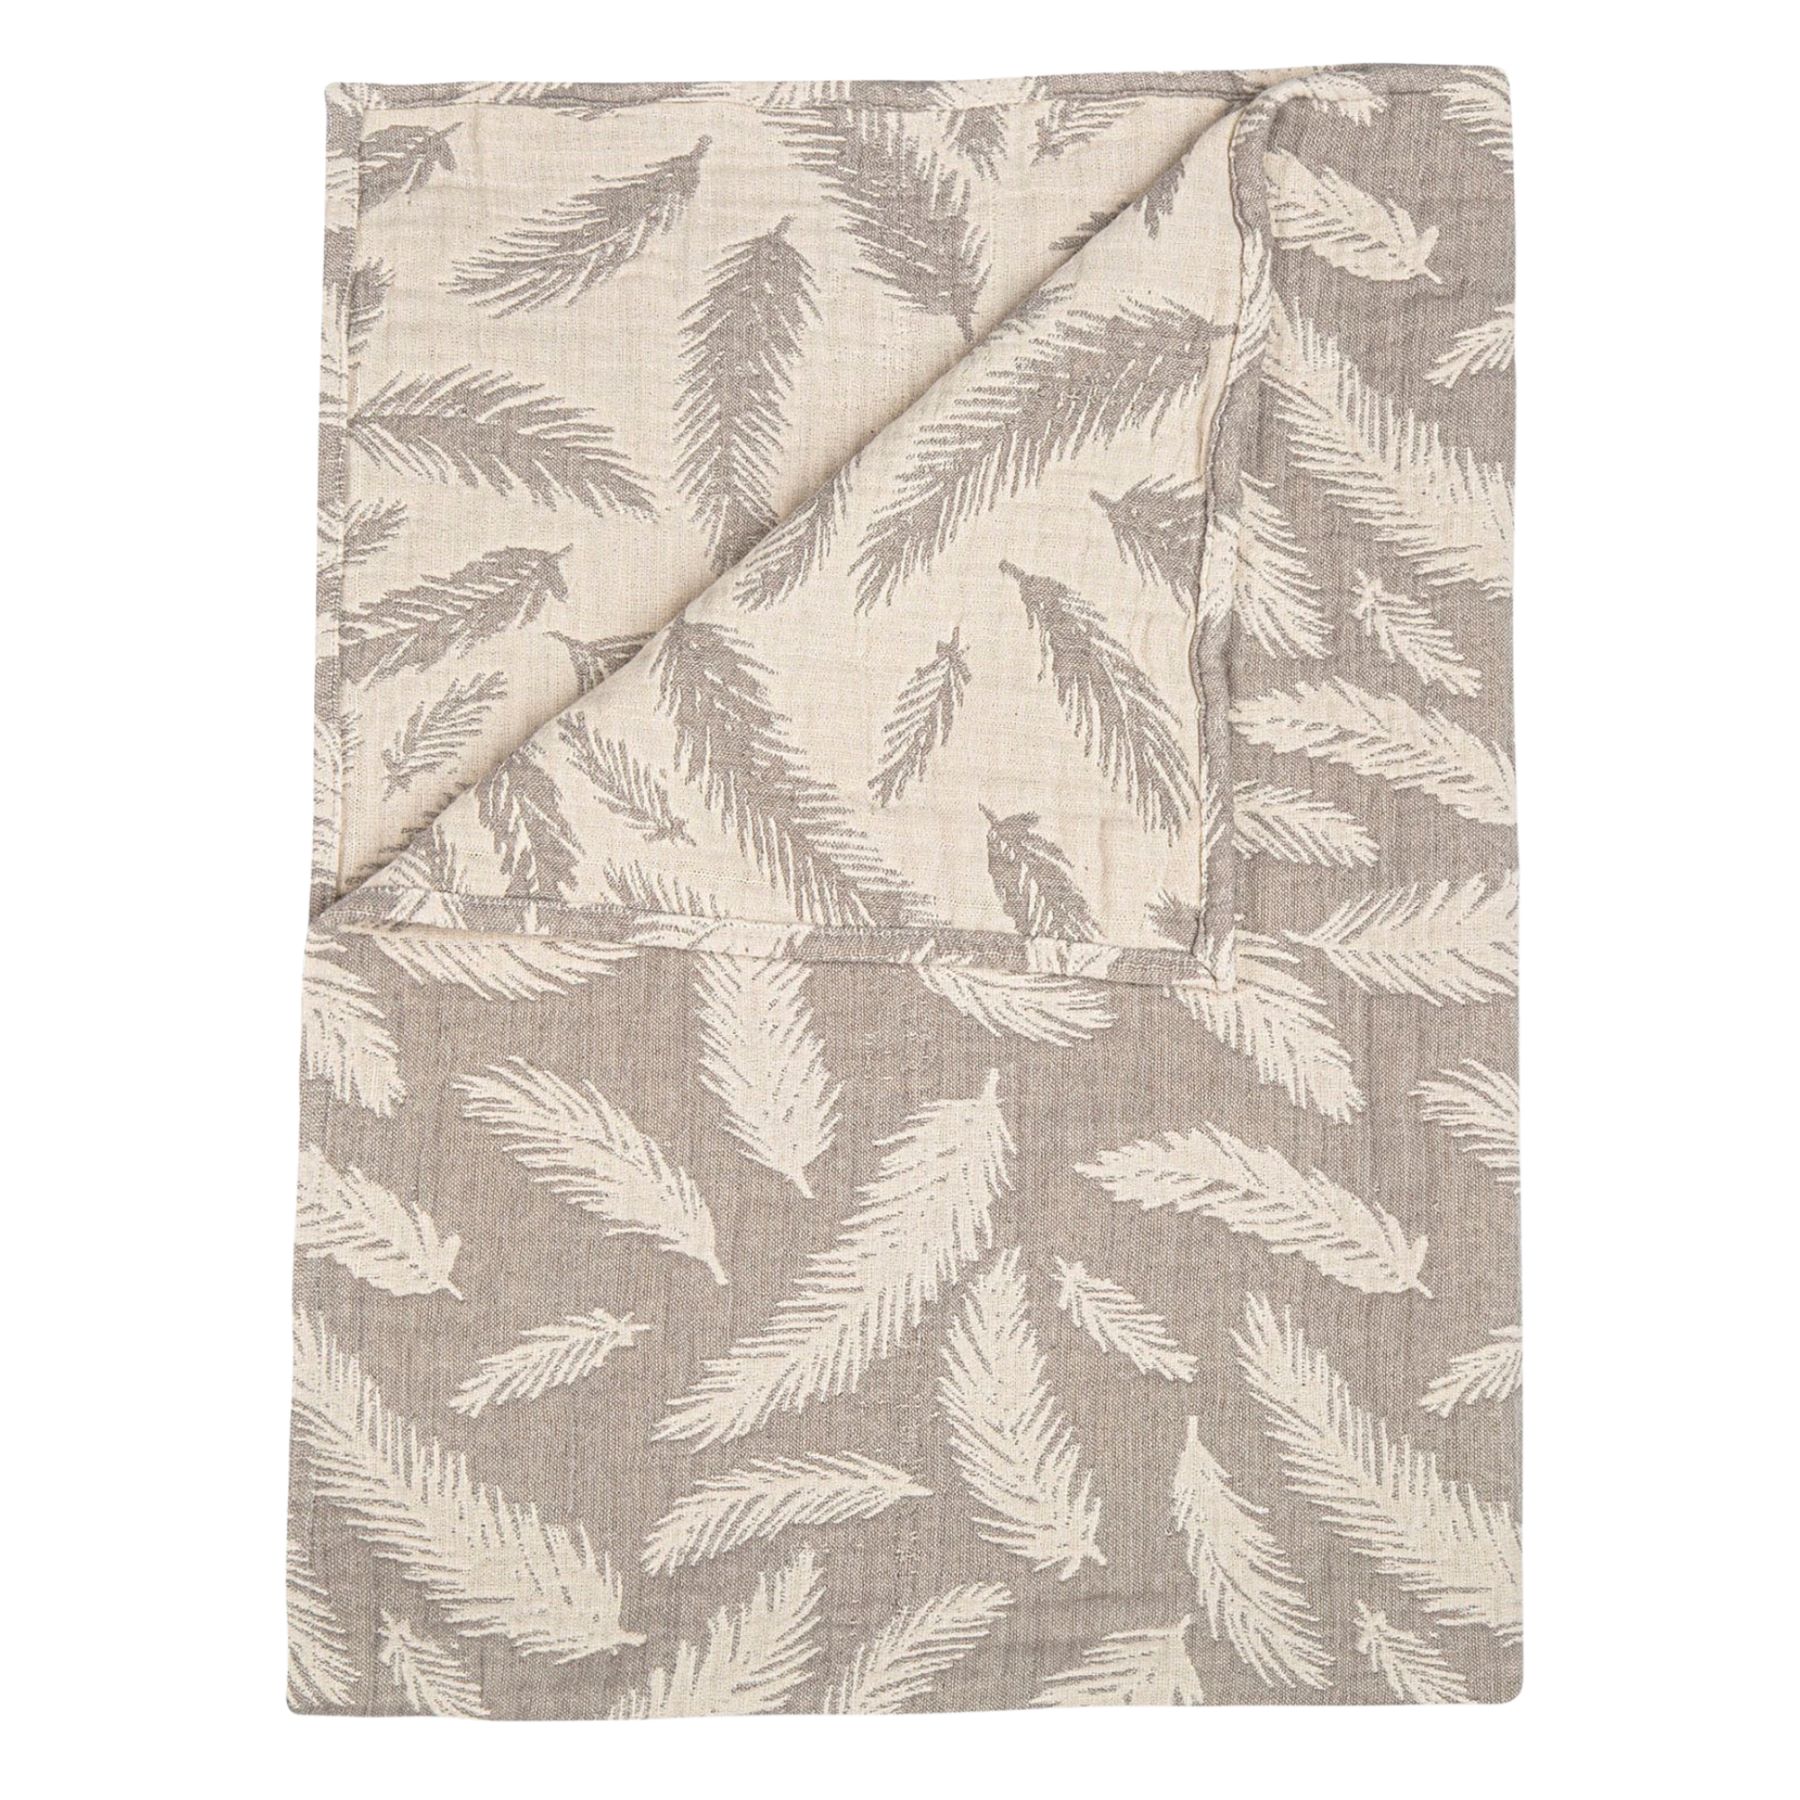 Leaf design blanket on white background